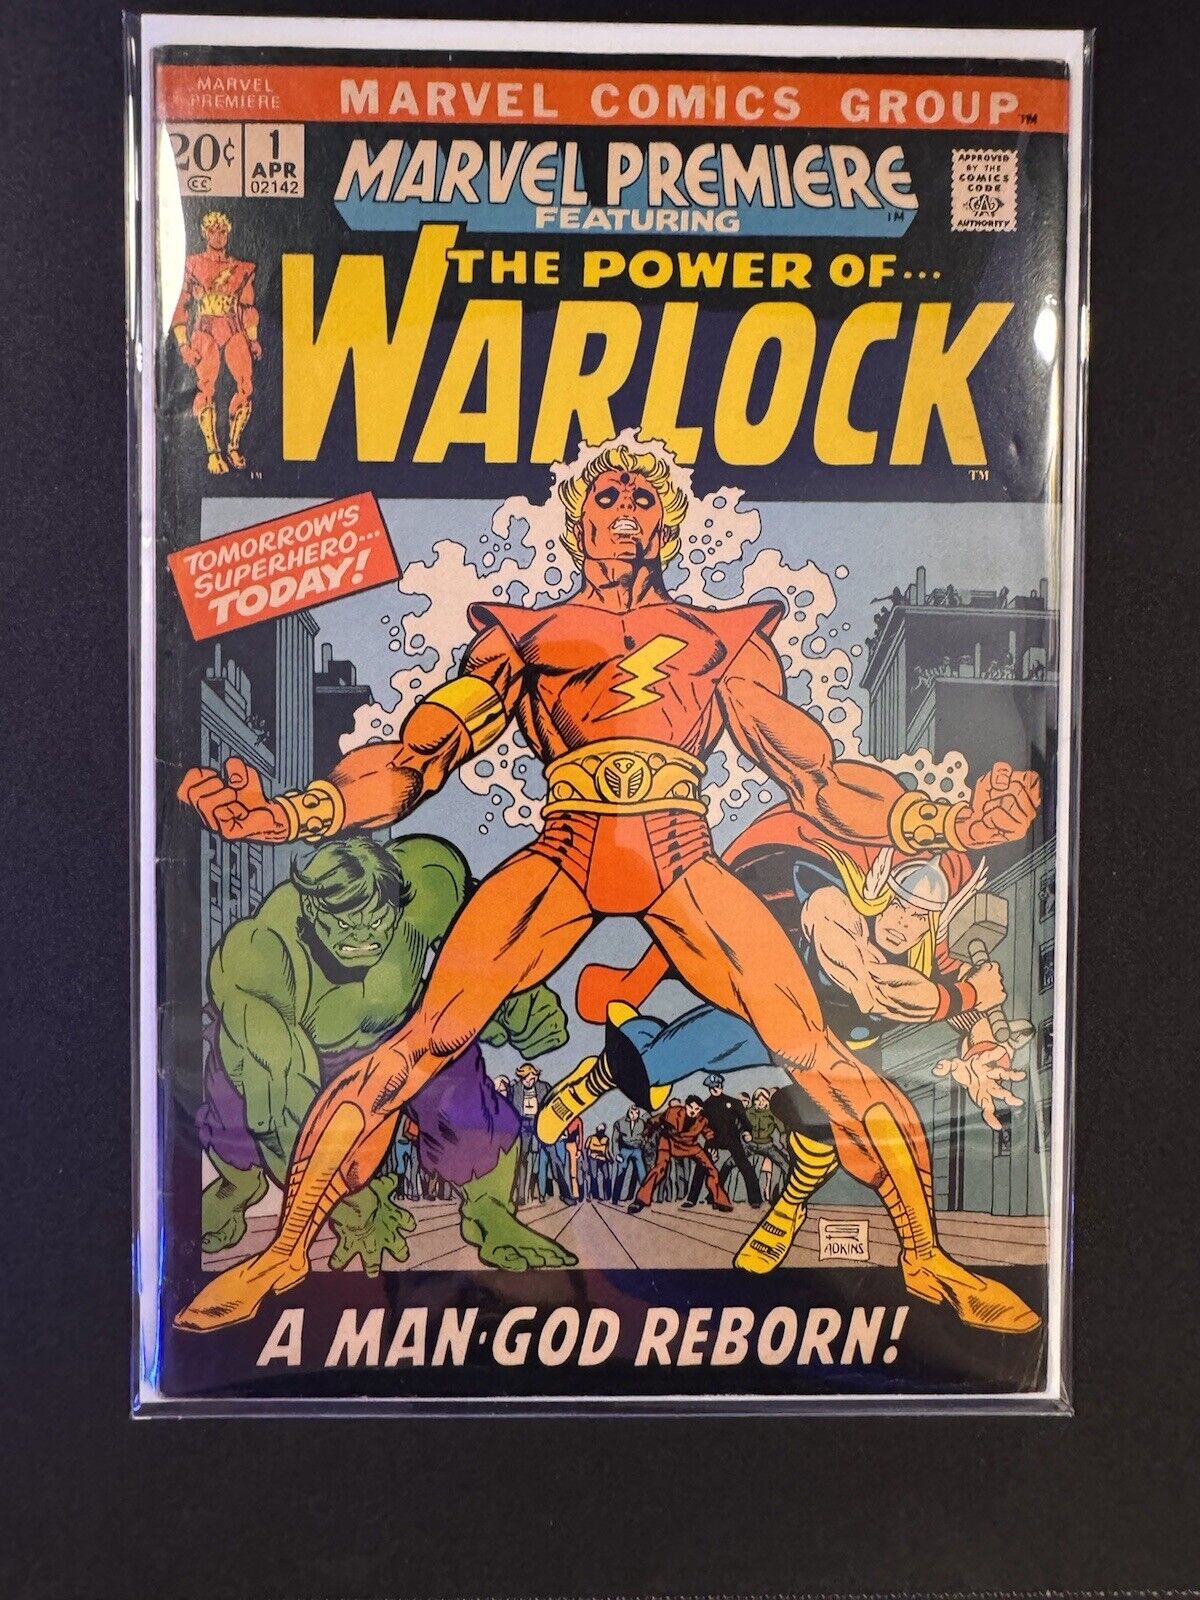 💥 MARVEL PREMIERE FEATURING POWER OF WARLOCK #1, 1972, 1ST APPEARANCE WARLOCK